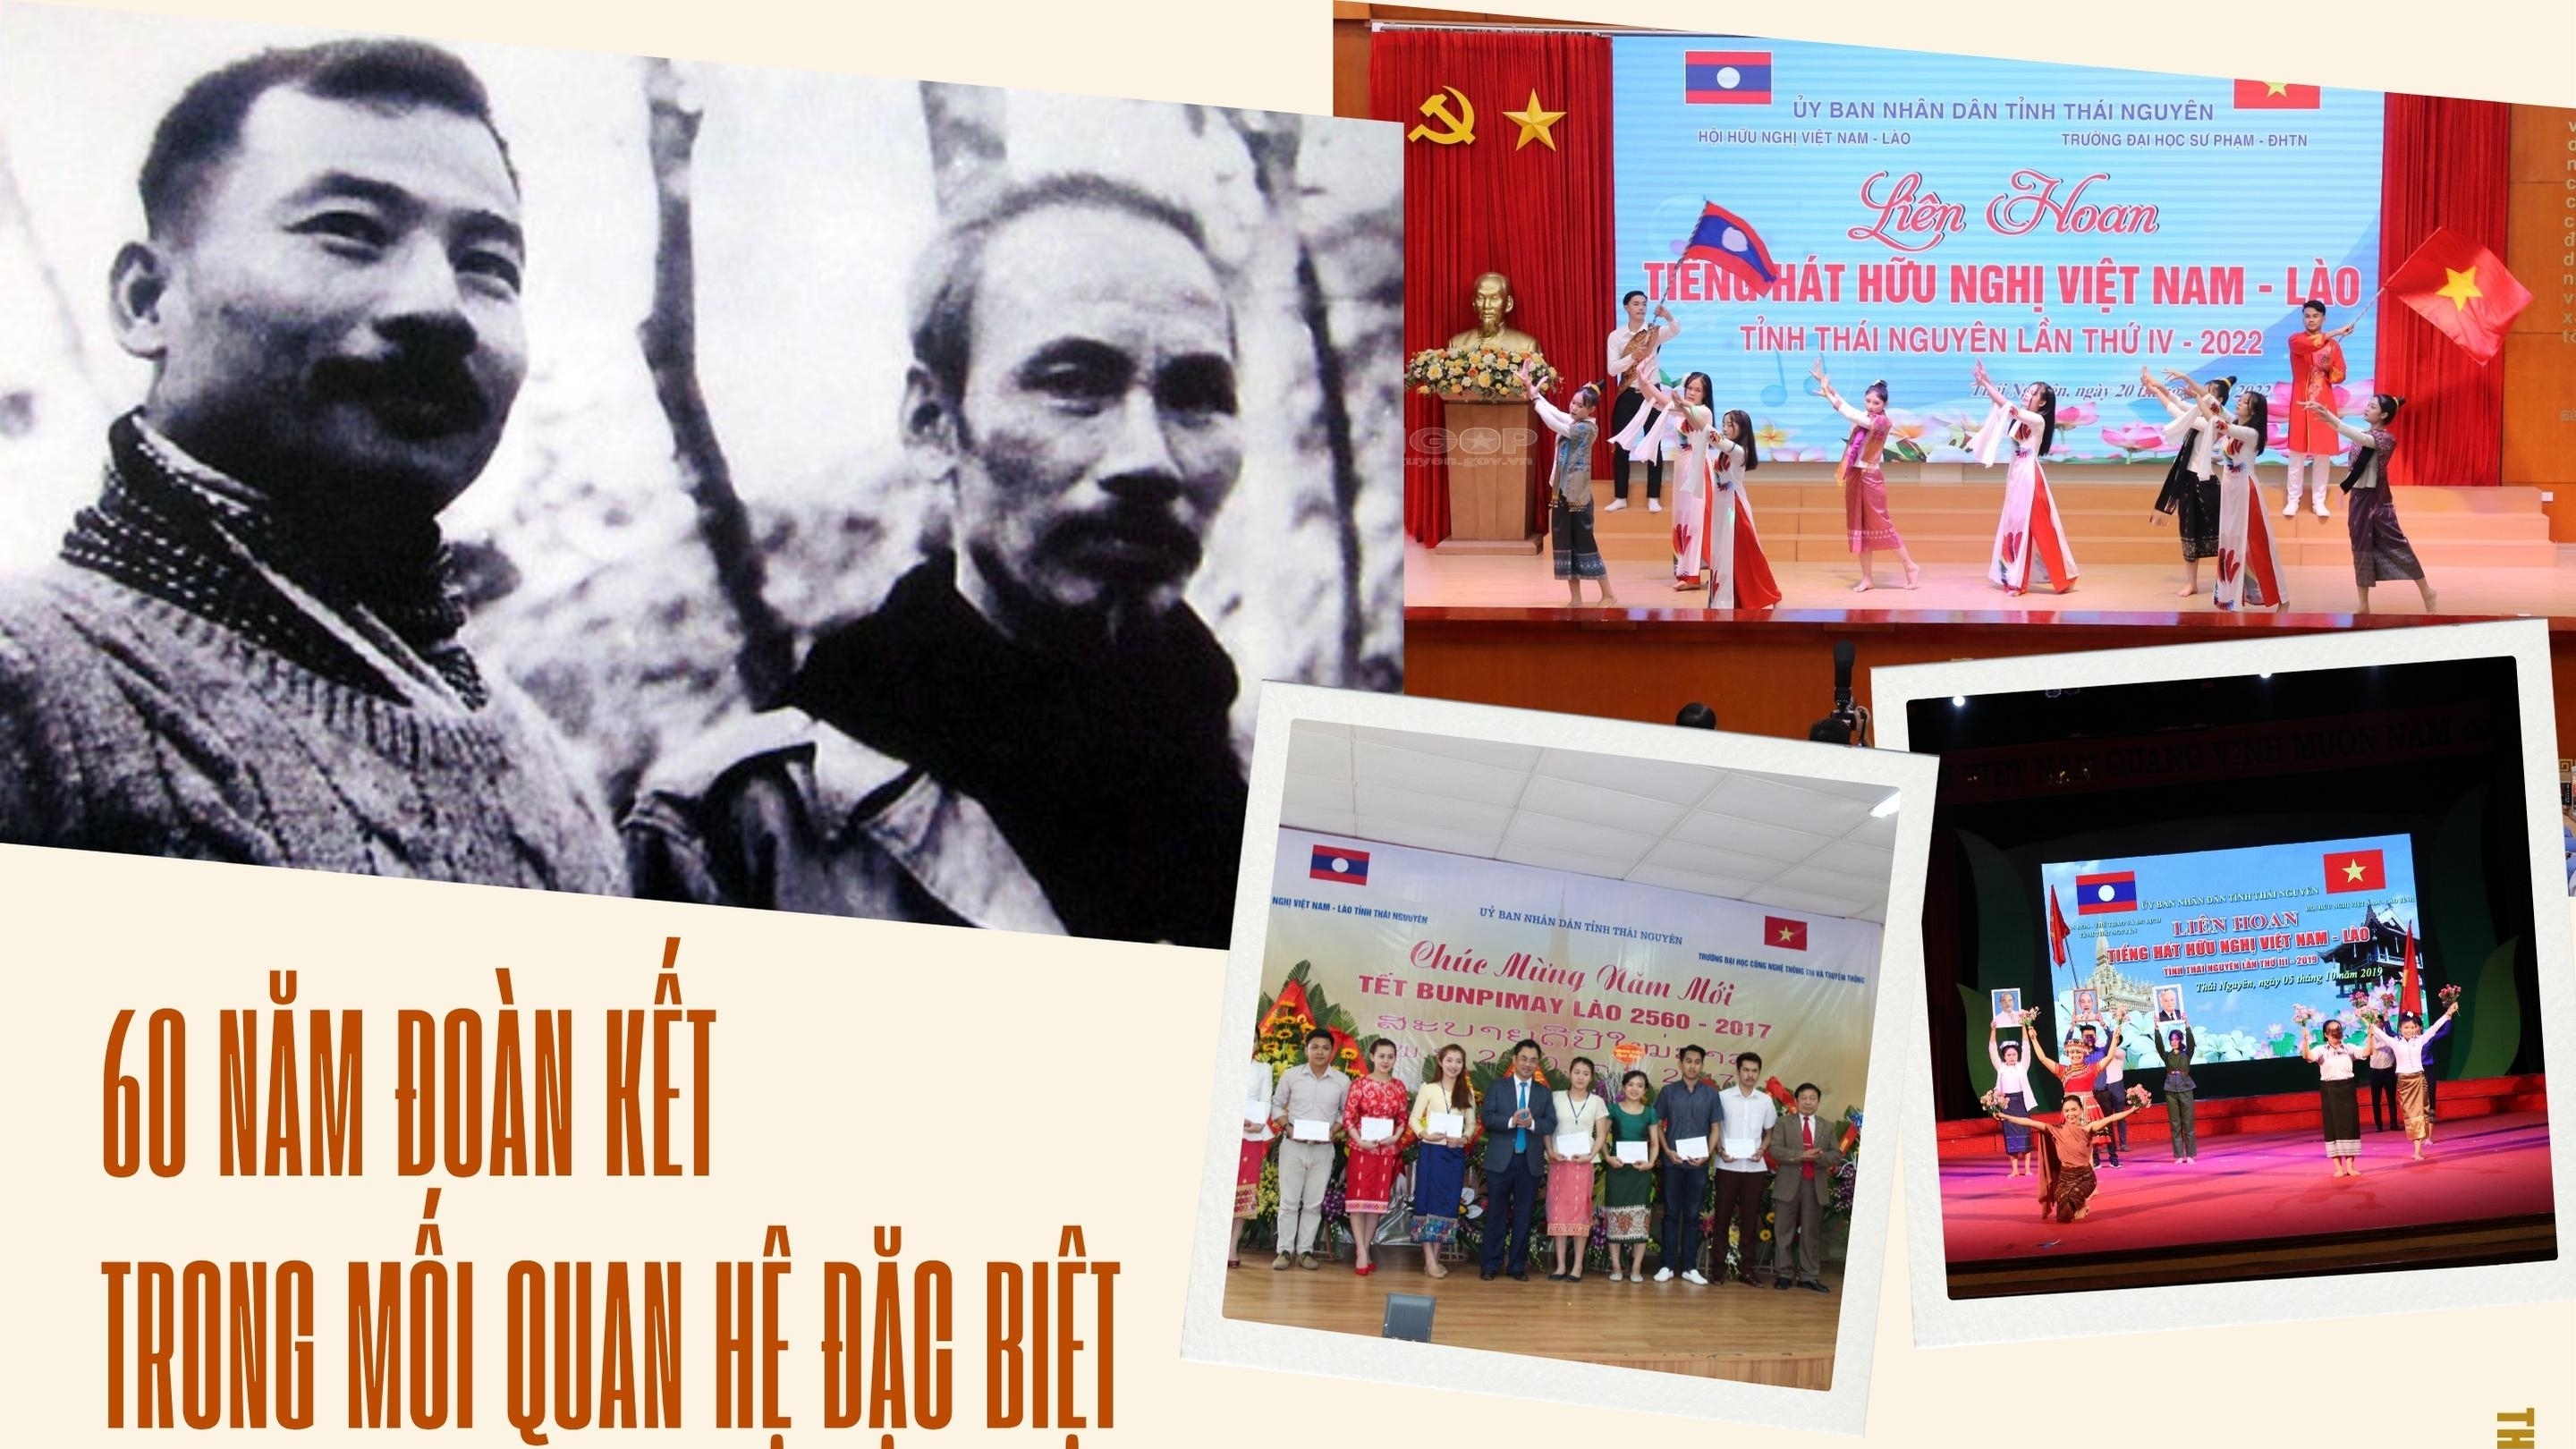 [Megastory] 60 năm đoàn kết trong mối quan hệ đặc biệt Việt Nam - Lào